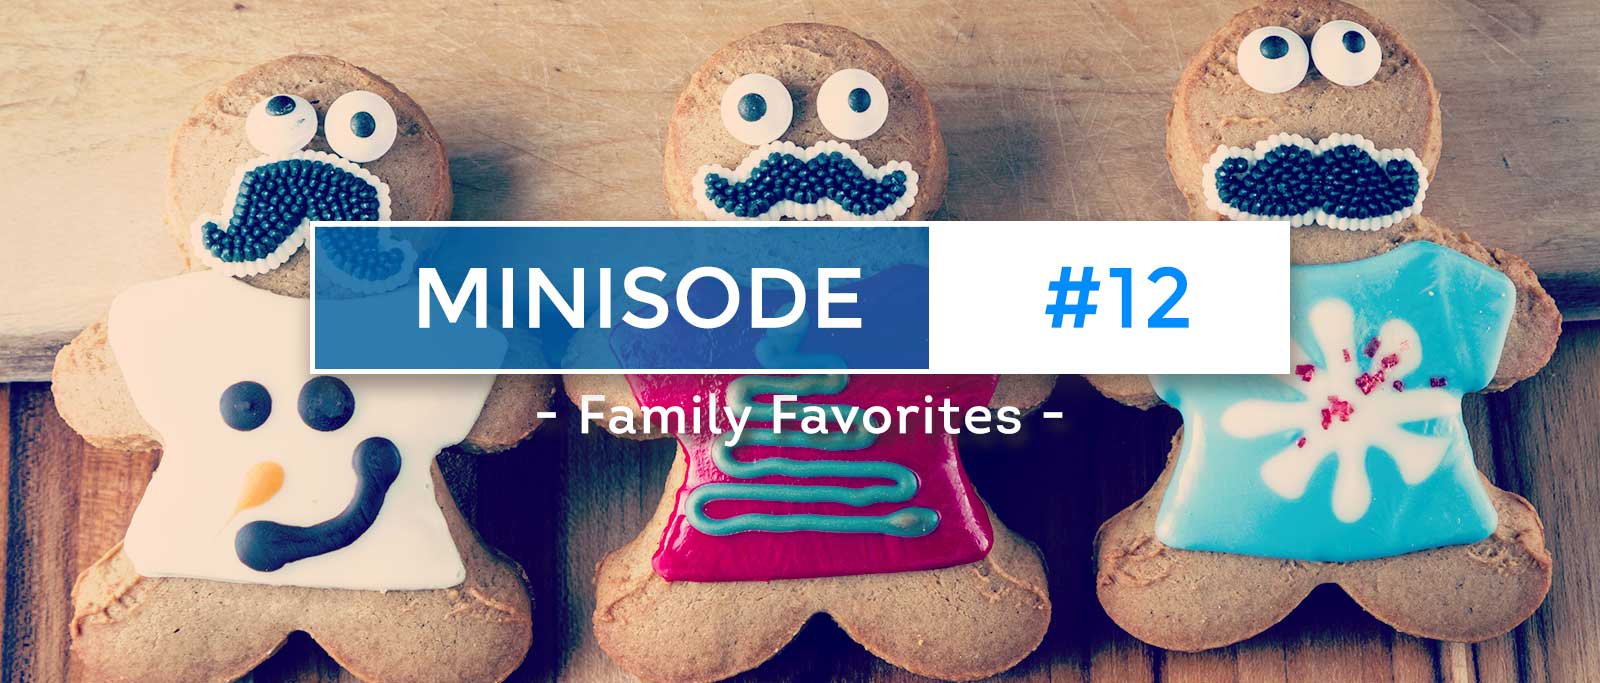 minisode-12-family-favorites-website